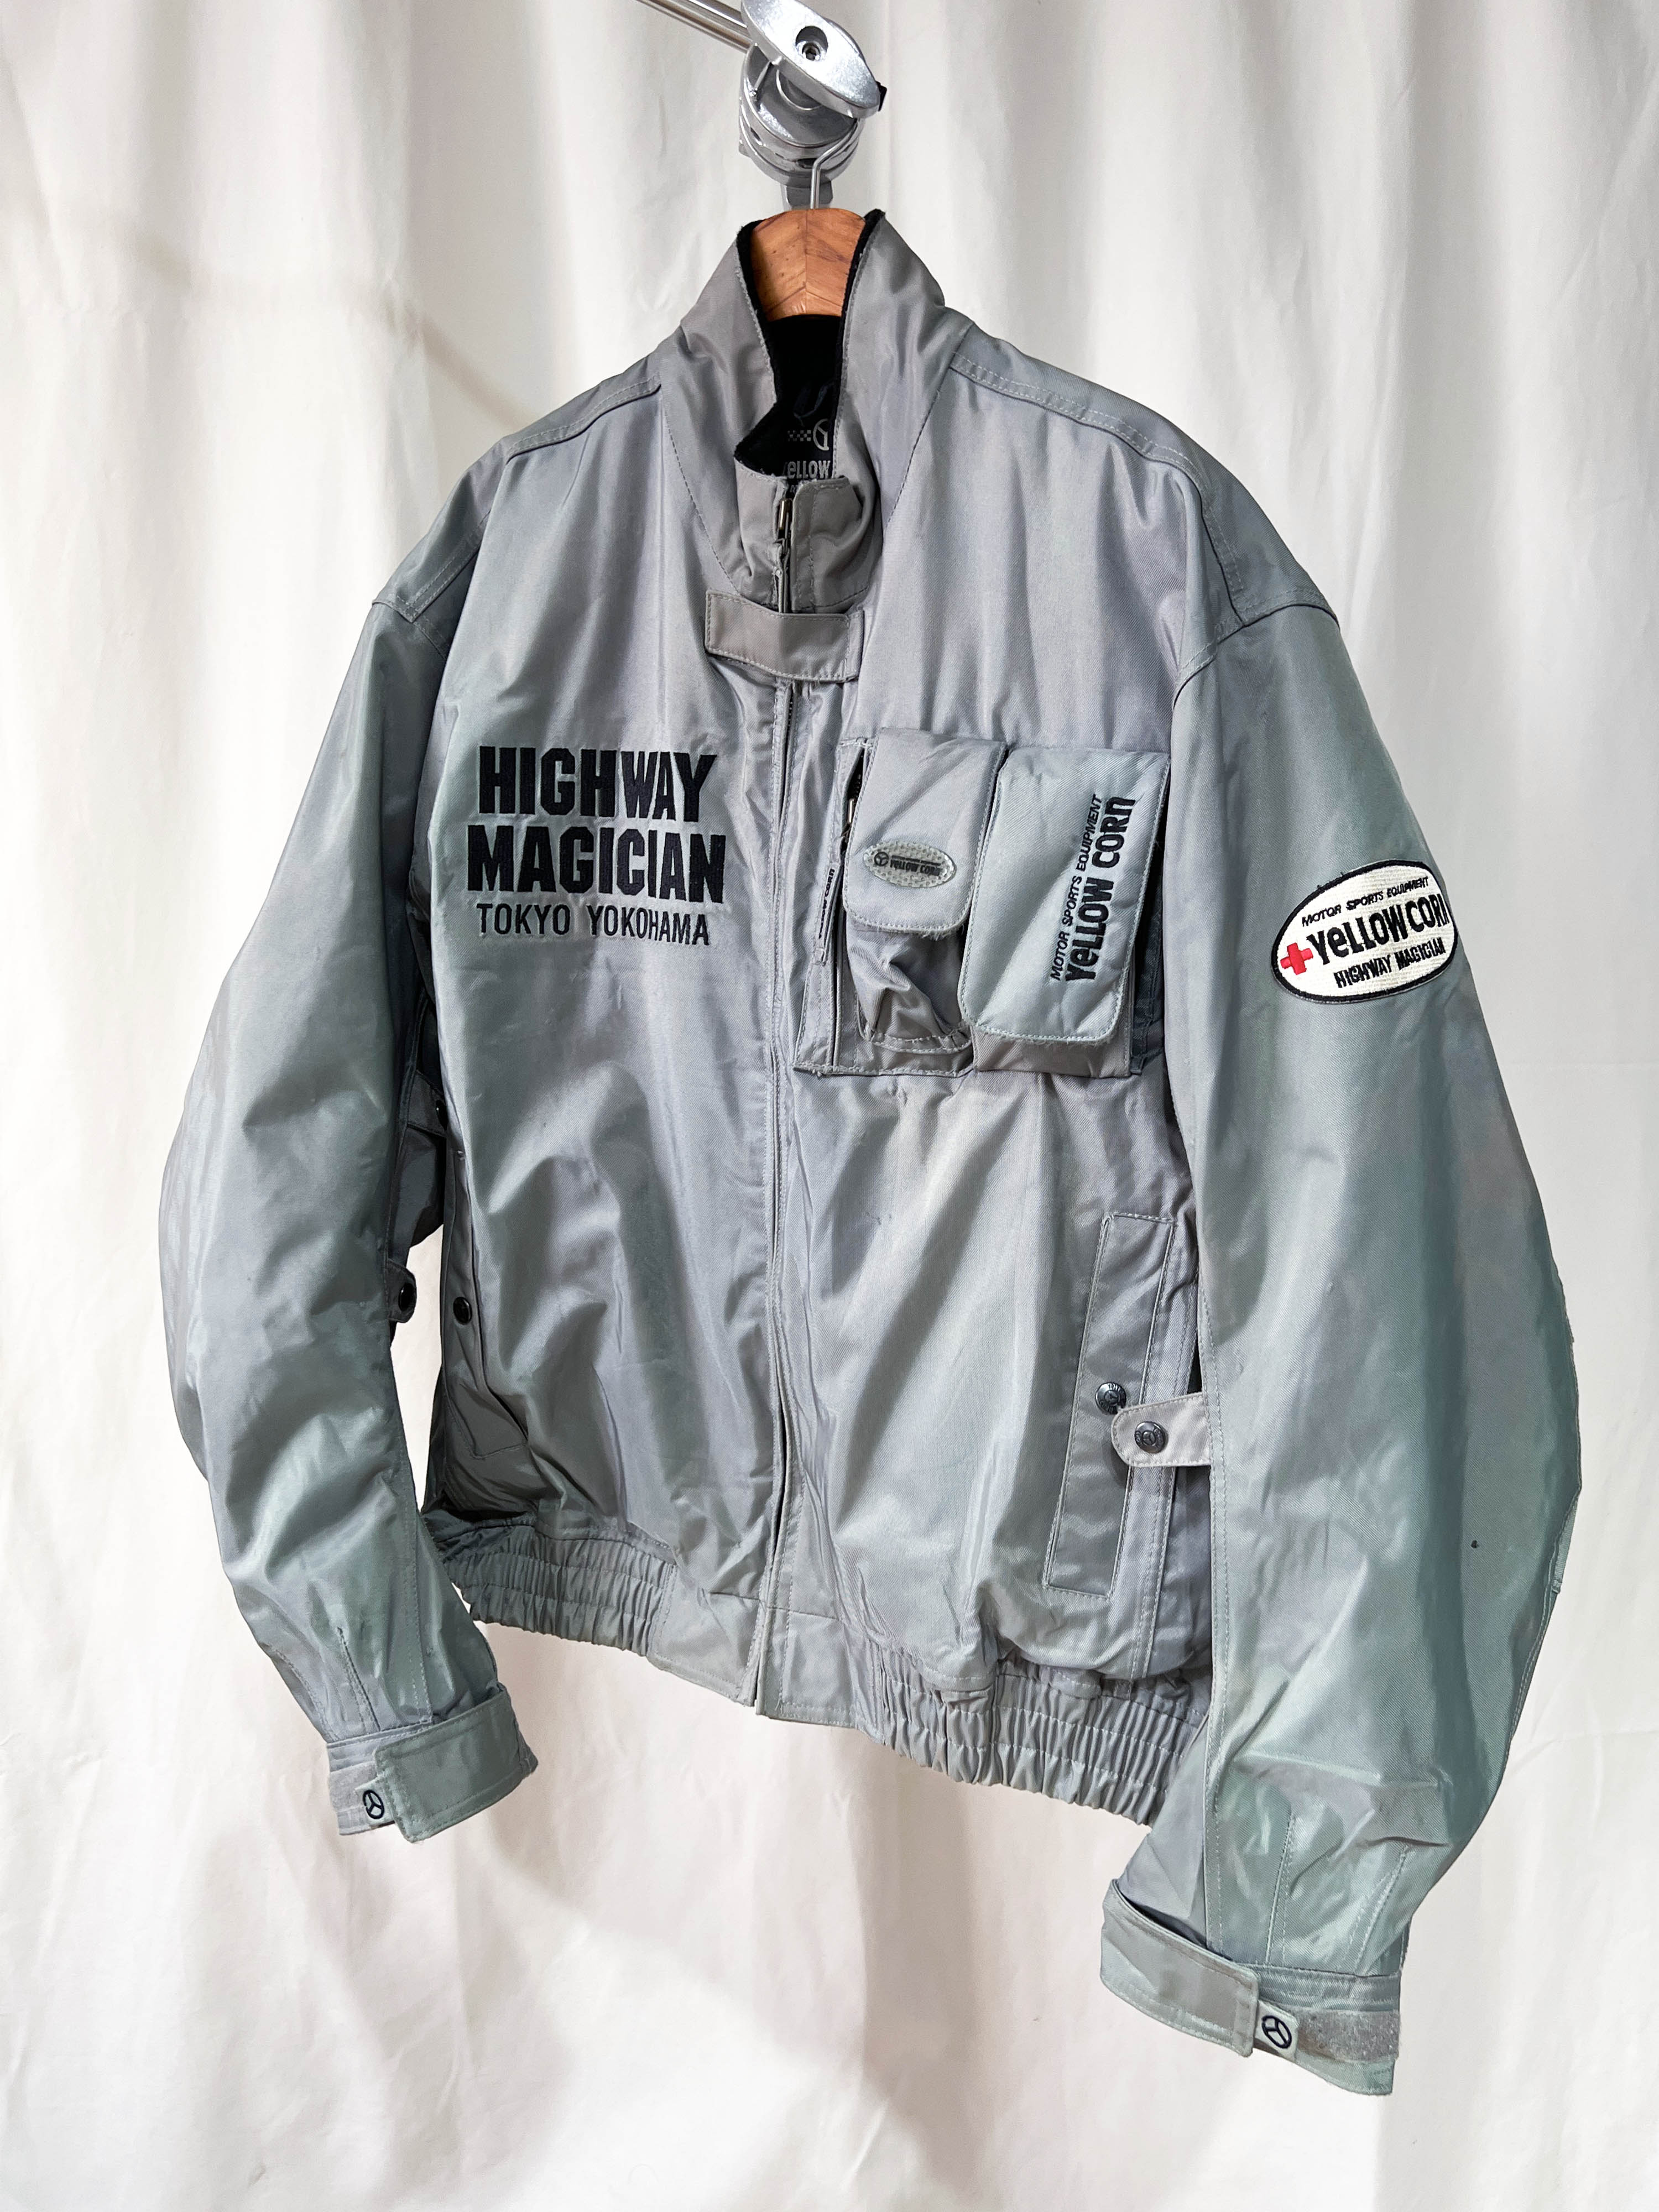 YELLOW CORN motorcycle jacket